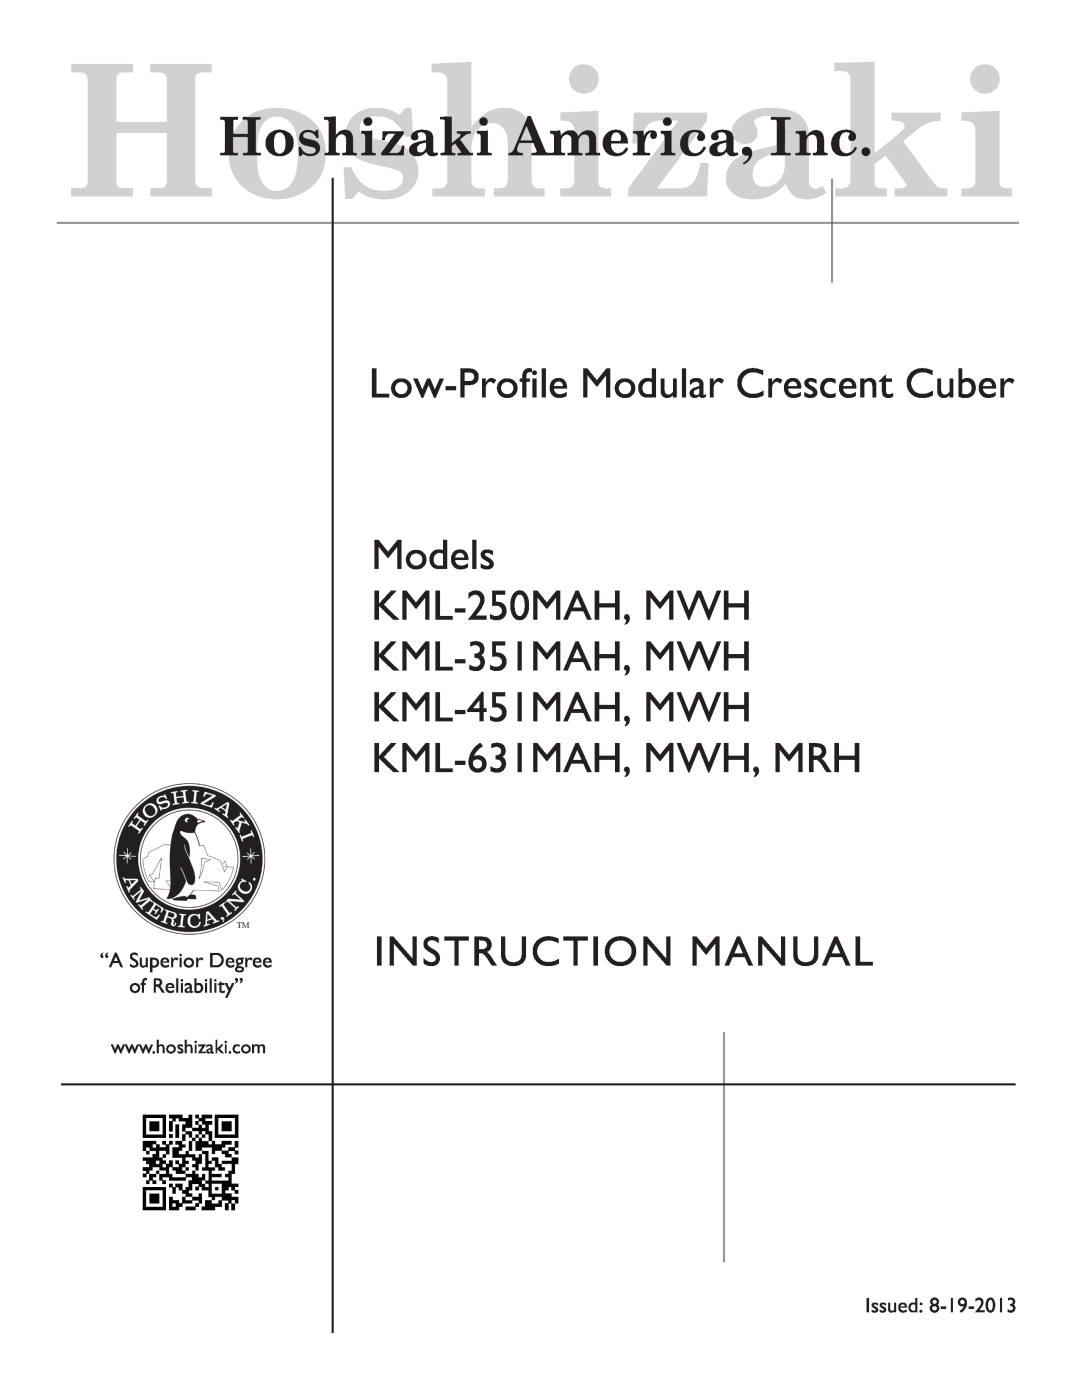 Hoshizaki manual Modular Crescent Cuber Models KML-250MAH, KML-250MWH, Parts List, “A Superior Degree of Reliability” 